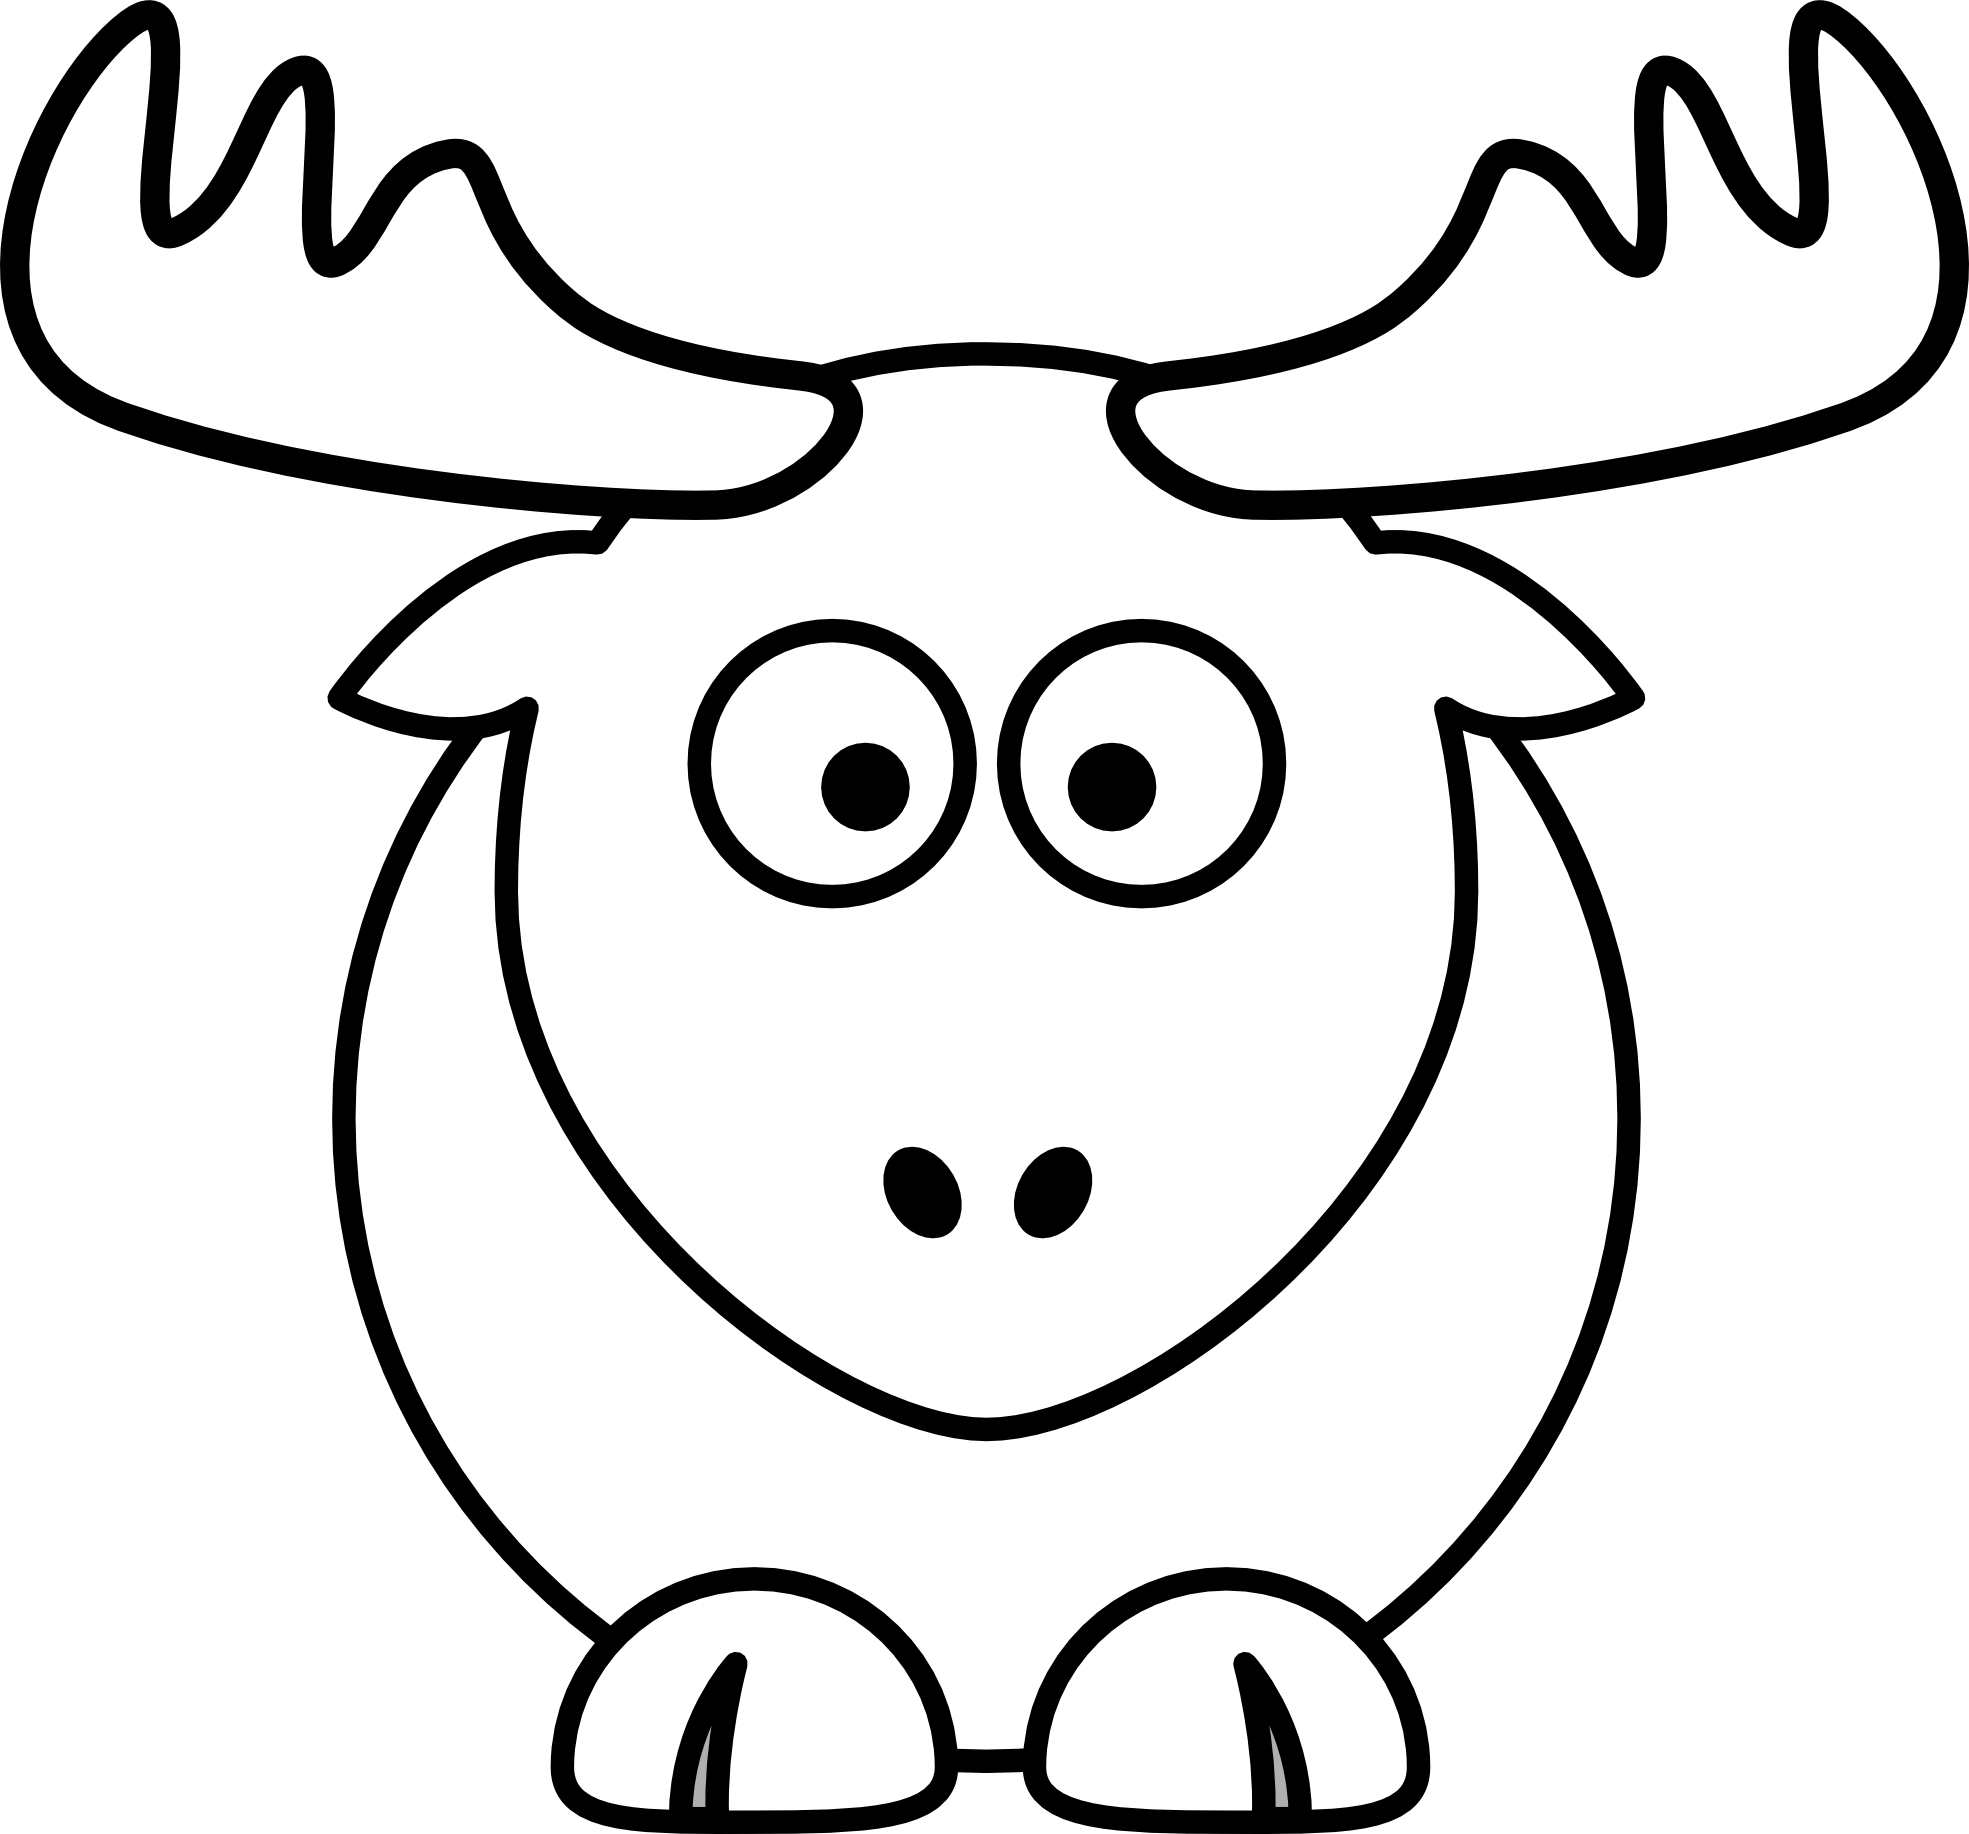 Elk clipart simple. Reindeer black and white